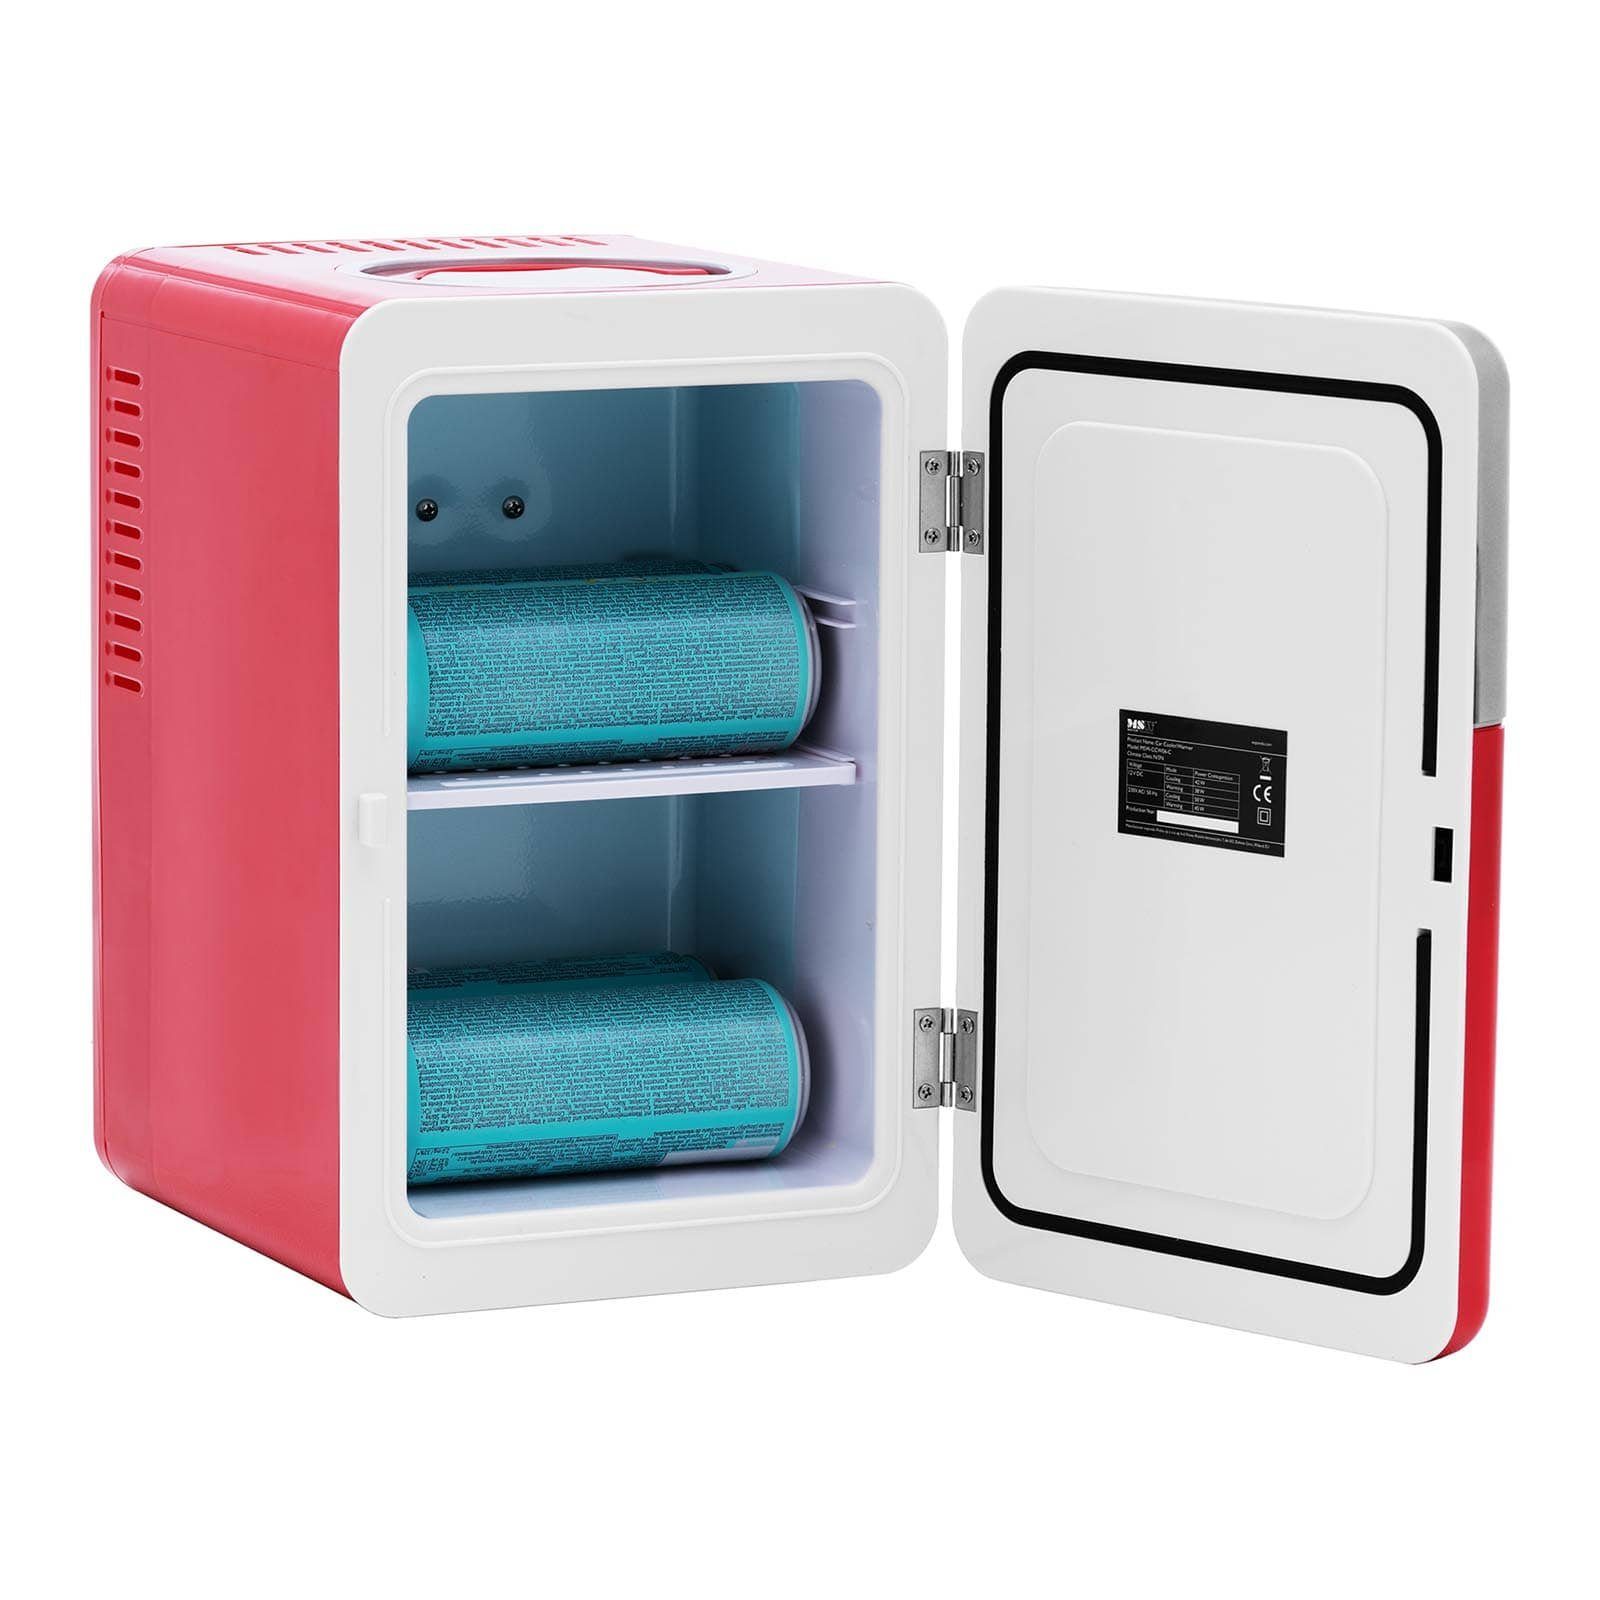 Preisvergleich für MSW Elektrische Kühlbox Mini-Kühlschrank 12 V / 230 V -  2-in-1-Gerät mit Warmhaltefunktio…, in der Farbe Rot, GTIN: 4062859182524